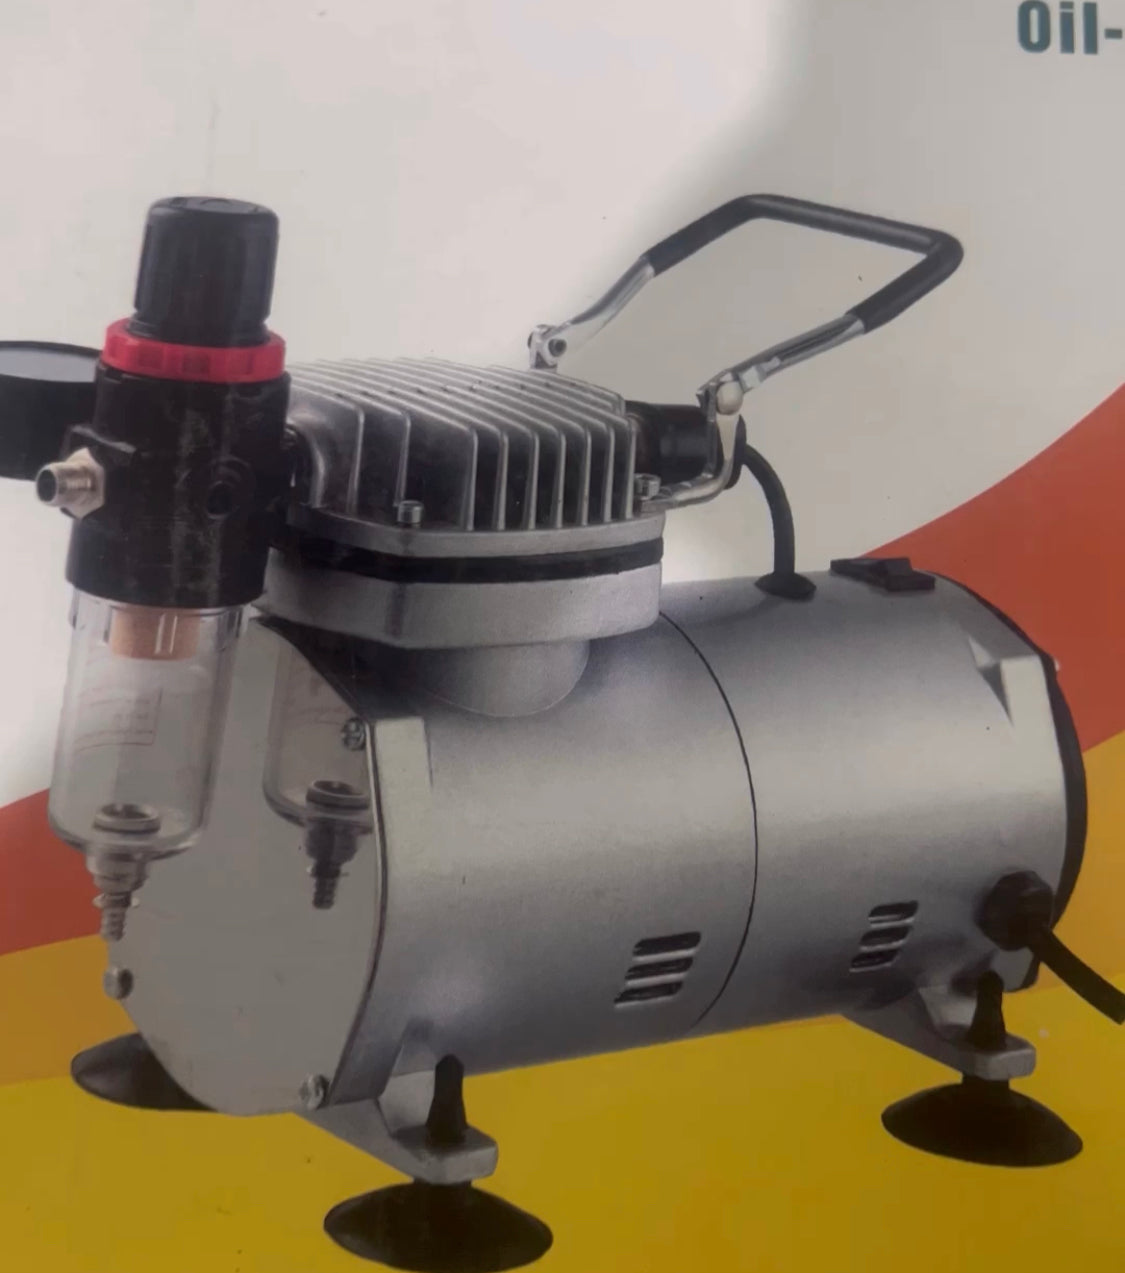 Mini compressor with spray gun